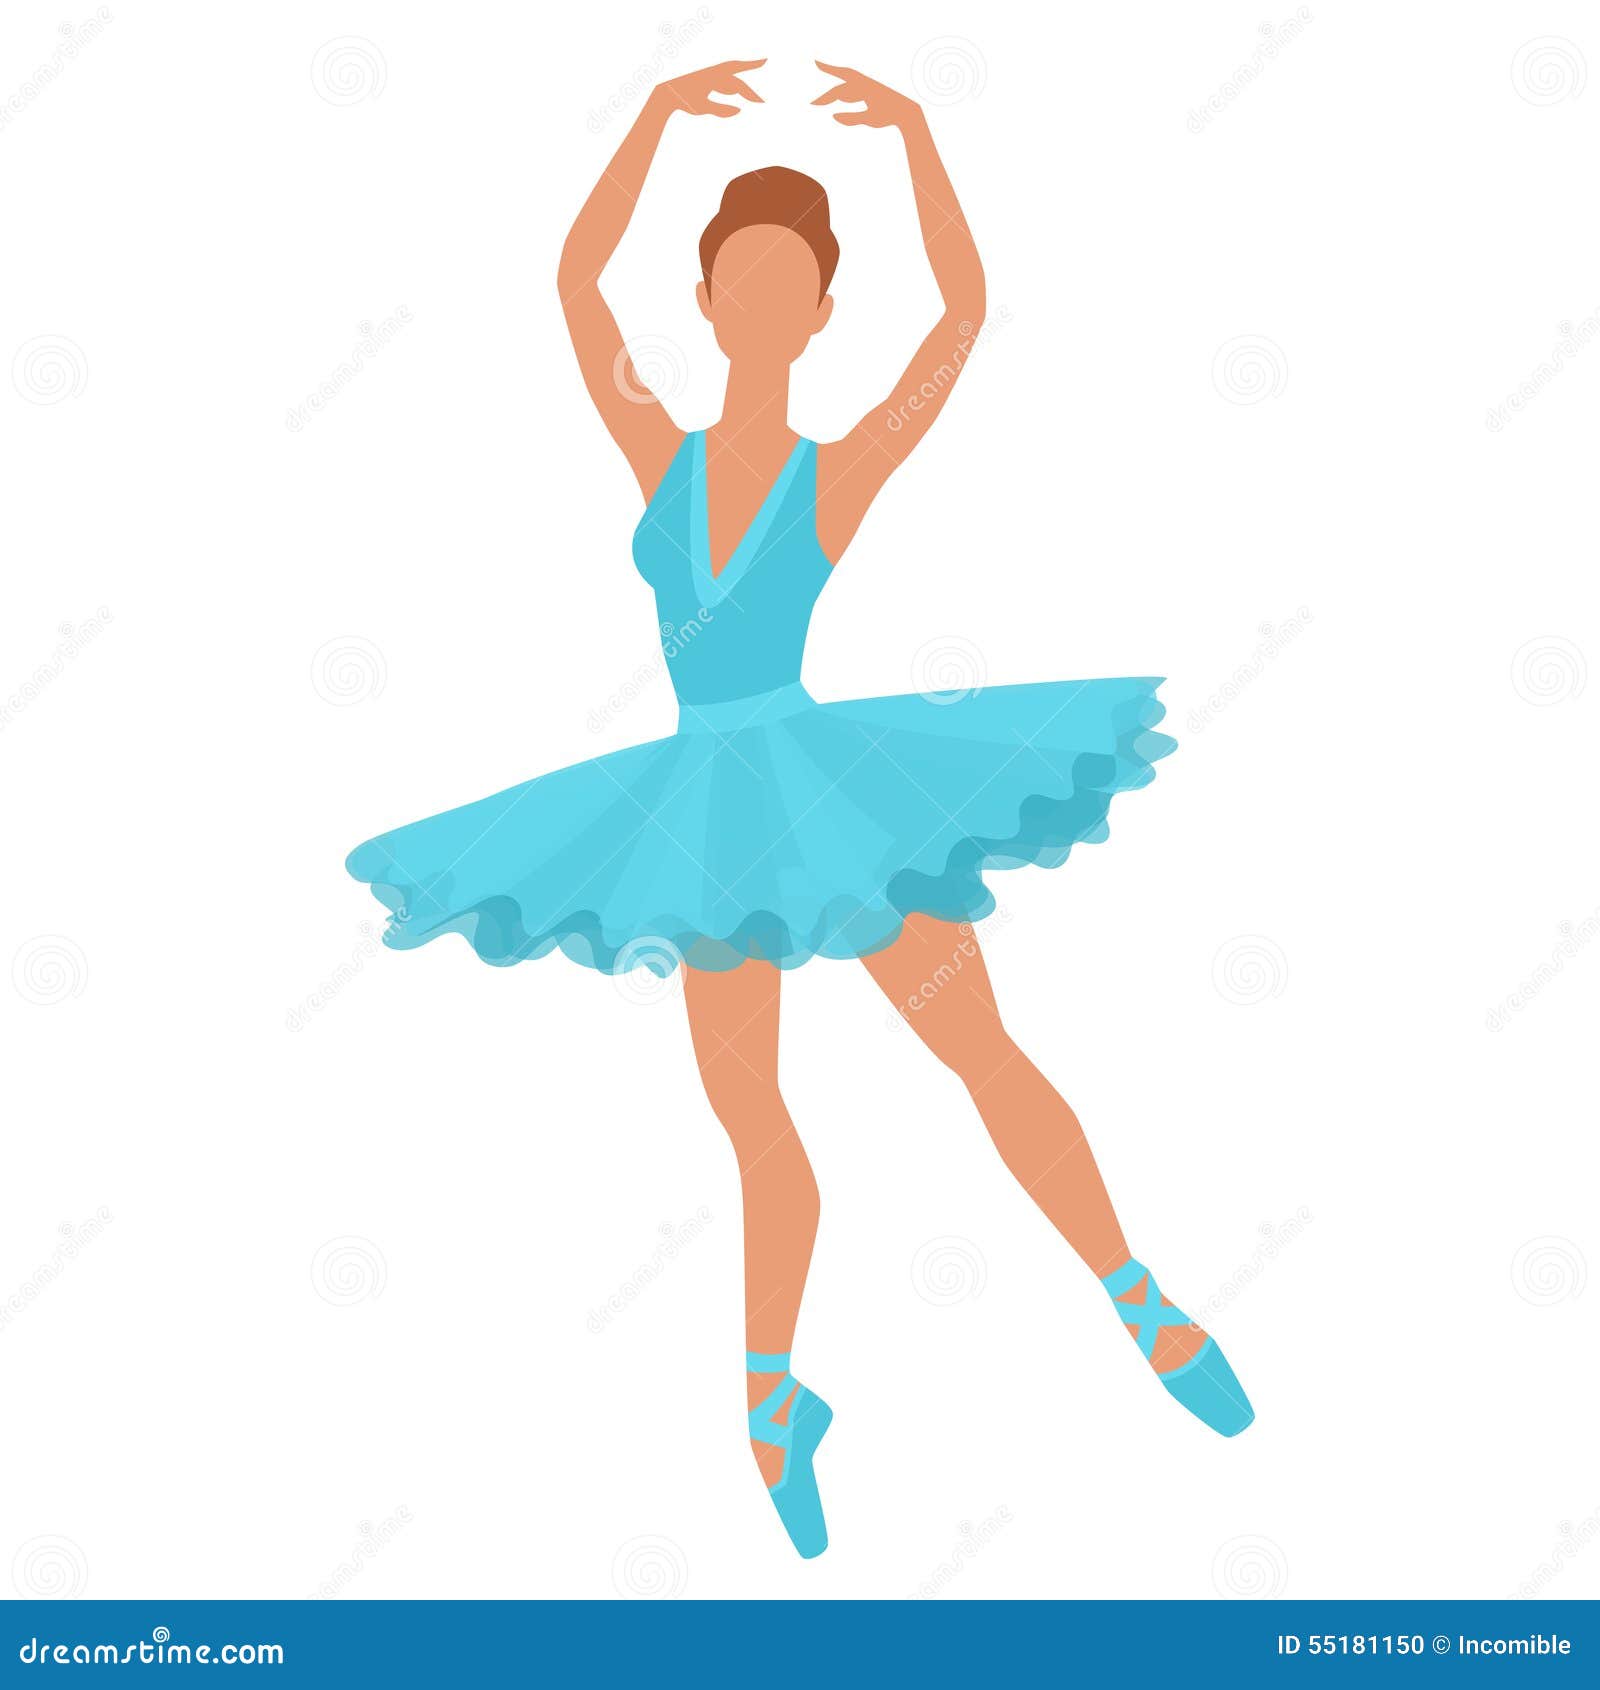 Stampa disegno di ballerine danza classica da colorare Disegni di ballerina classica design casa creativa e Beauvoir bander